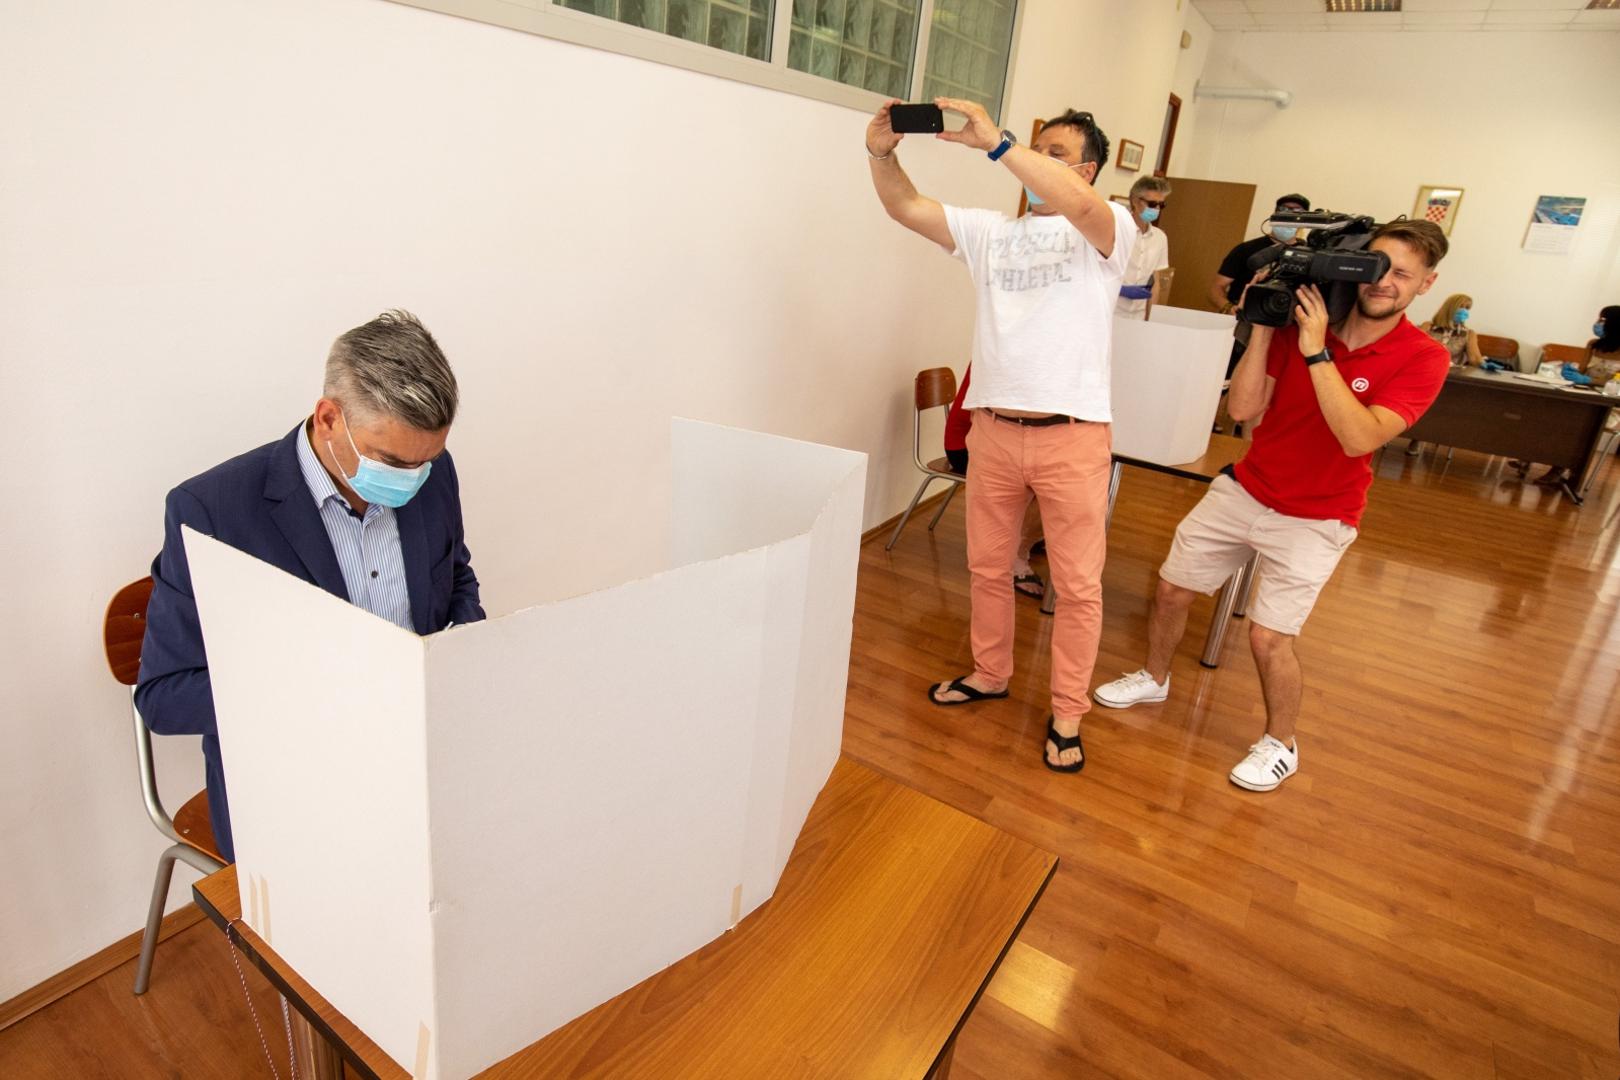 05.07.2020., Pula - Predsjednik IDS-a Boris Miletic glasovao je na birackom mjestu Vodotoranj MO Nova Veruda. Na glasanje je dosao u pratnji supruge Lare.

Photo: Srecko Niketic/PIXSELL